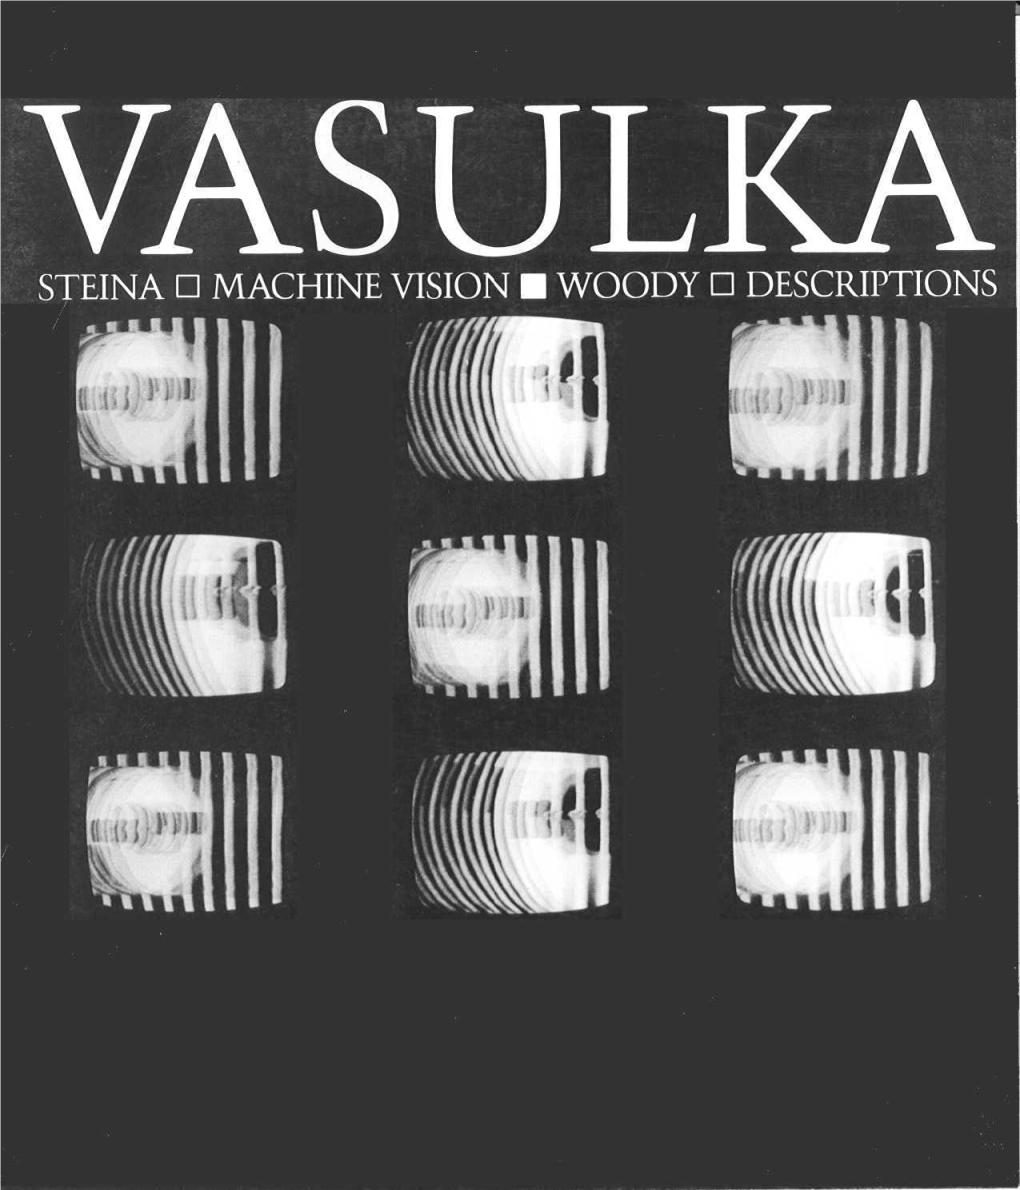 Catalogue of "Vasulka, Steina: MACHINE VISION Woody